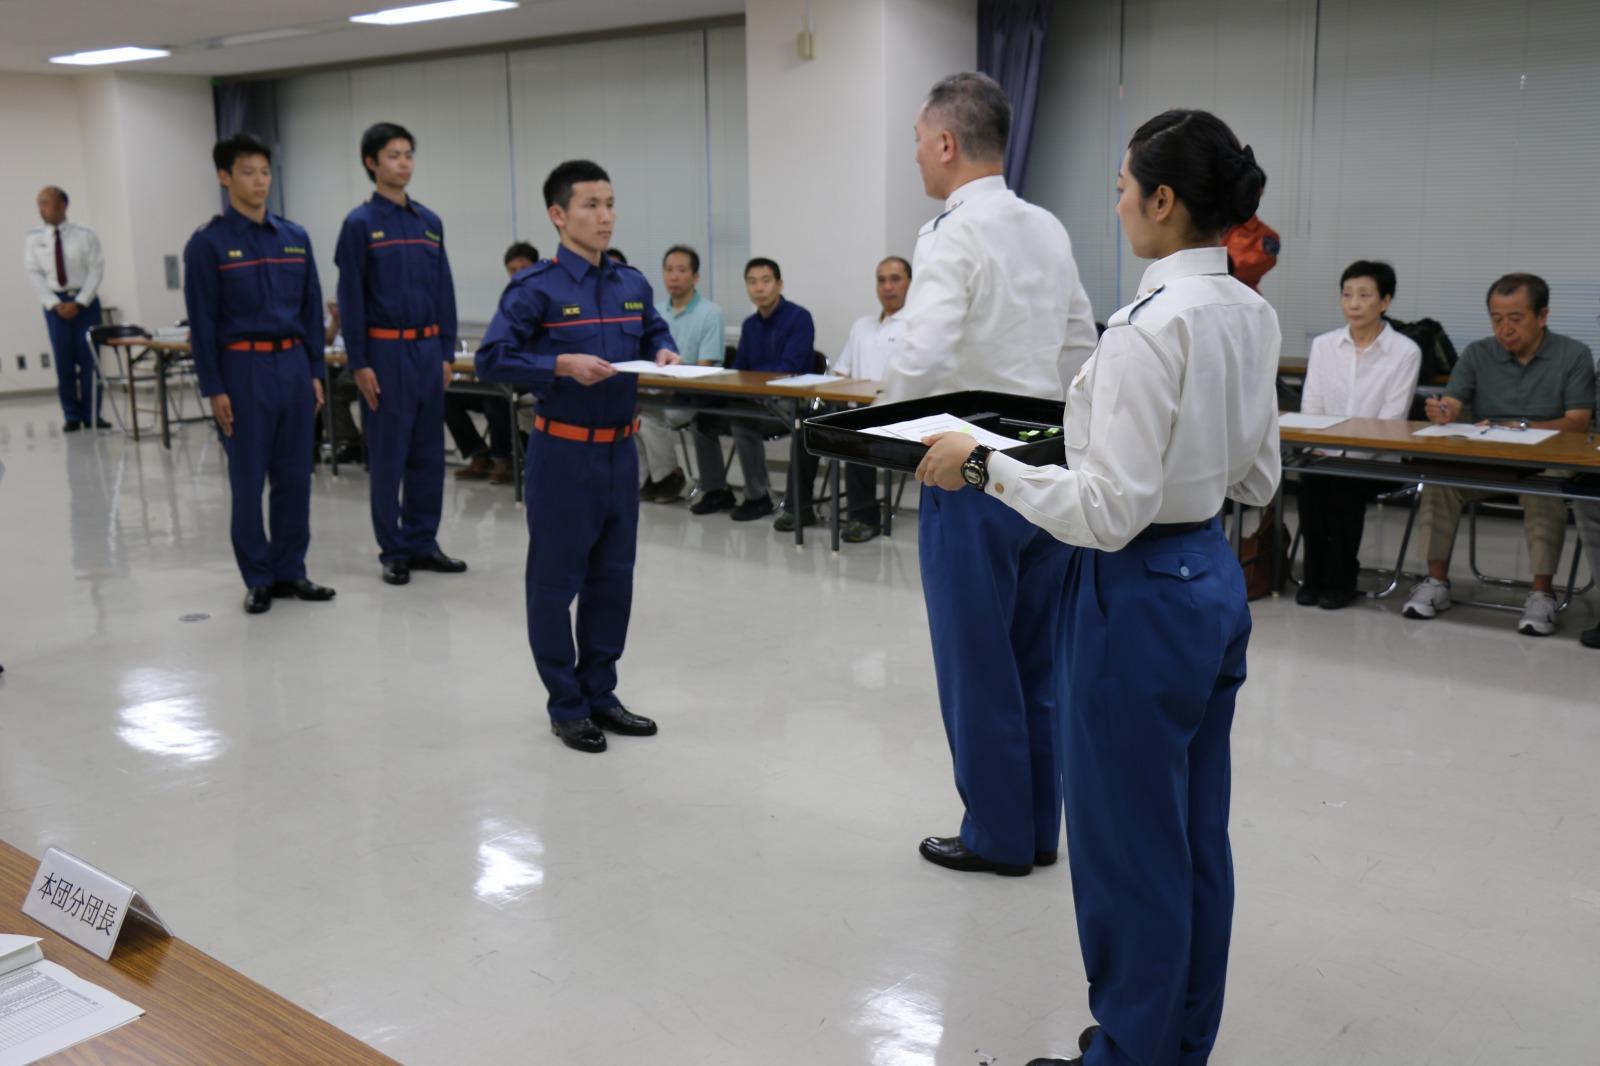 豊島消防署から 特別区学生消防団活動認証制度では初の認証状が交付された 帝京平成大学 大学プレスセンター